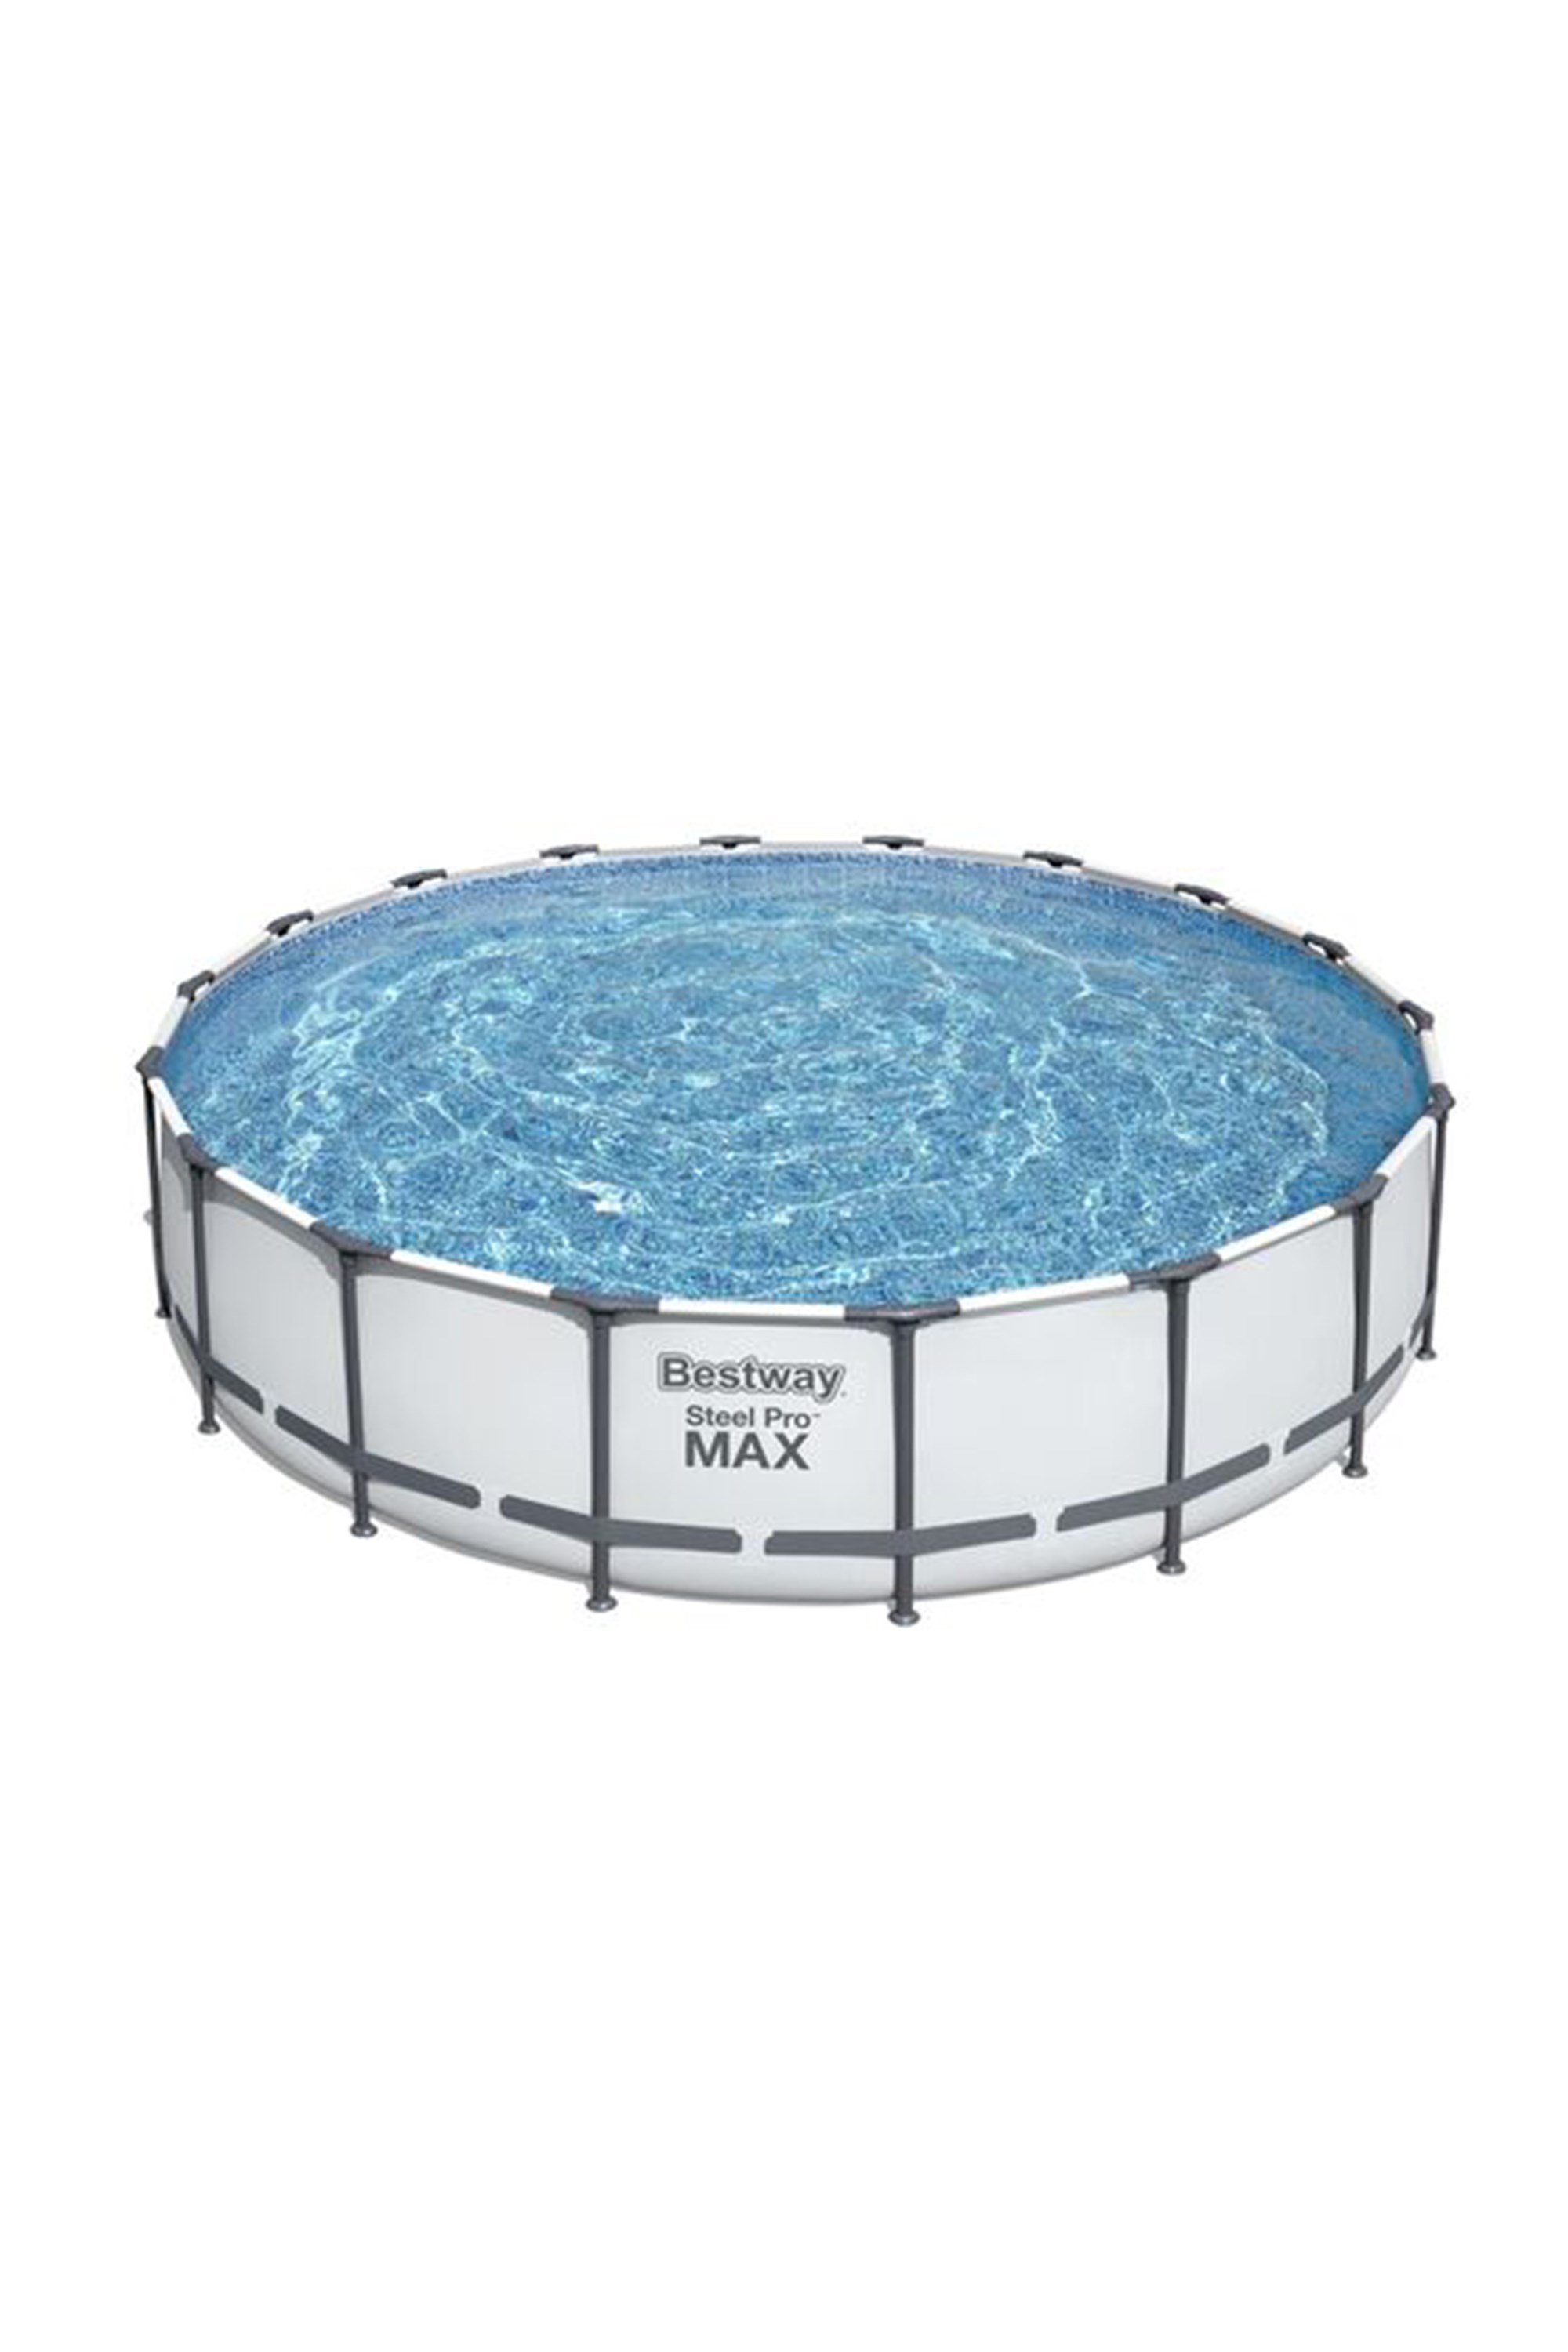 Steel Pro Max 18’ x 48" Pool Set -